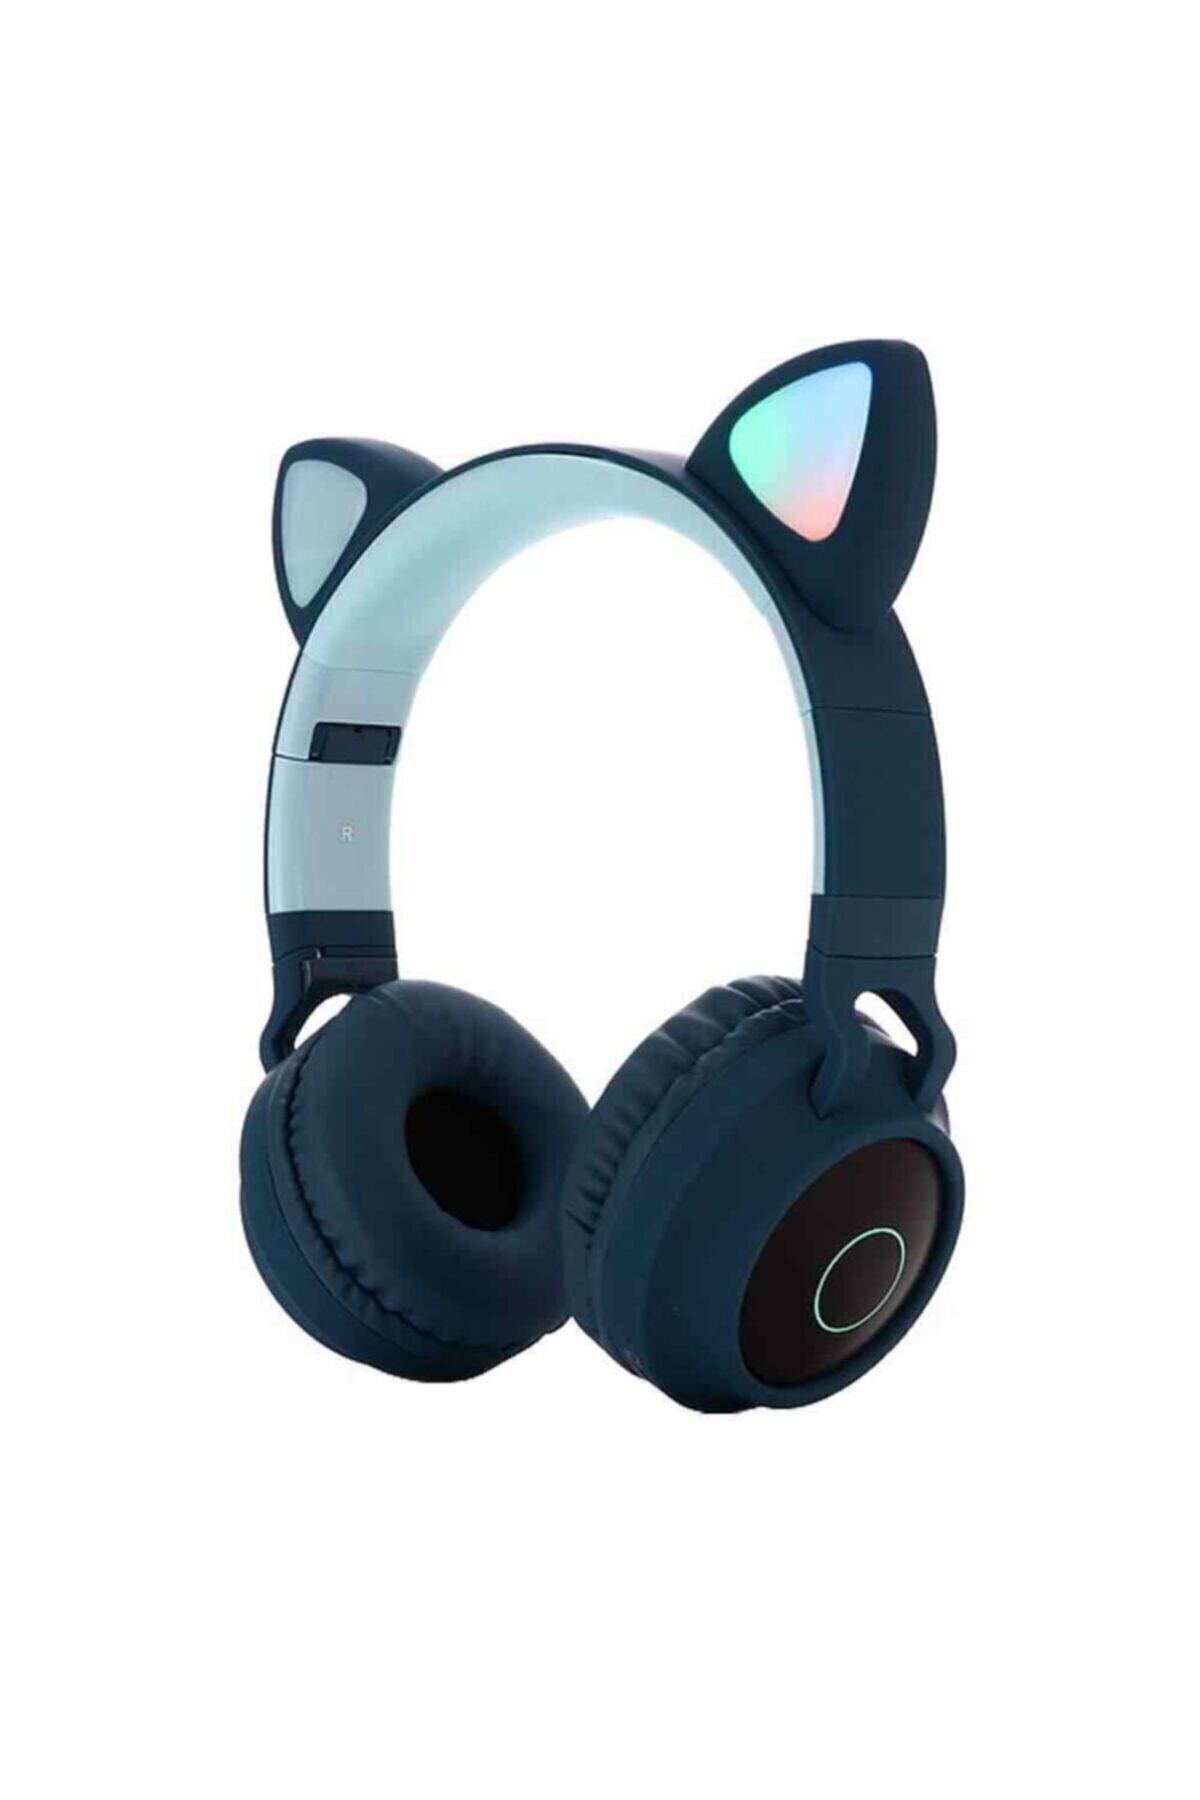 OEM Kart Girişli Kedi Bluetooth Kulaklık Yüksek Ses Akıllı LED Kulaklık12 Saat Fazla Şarj Zw-028